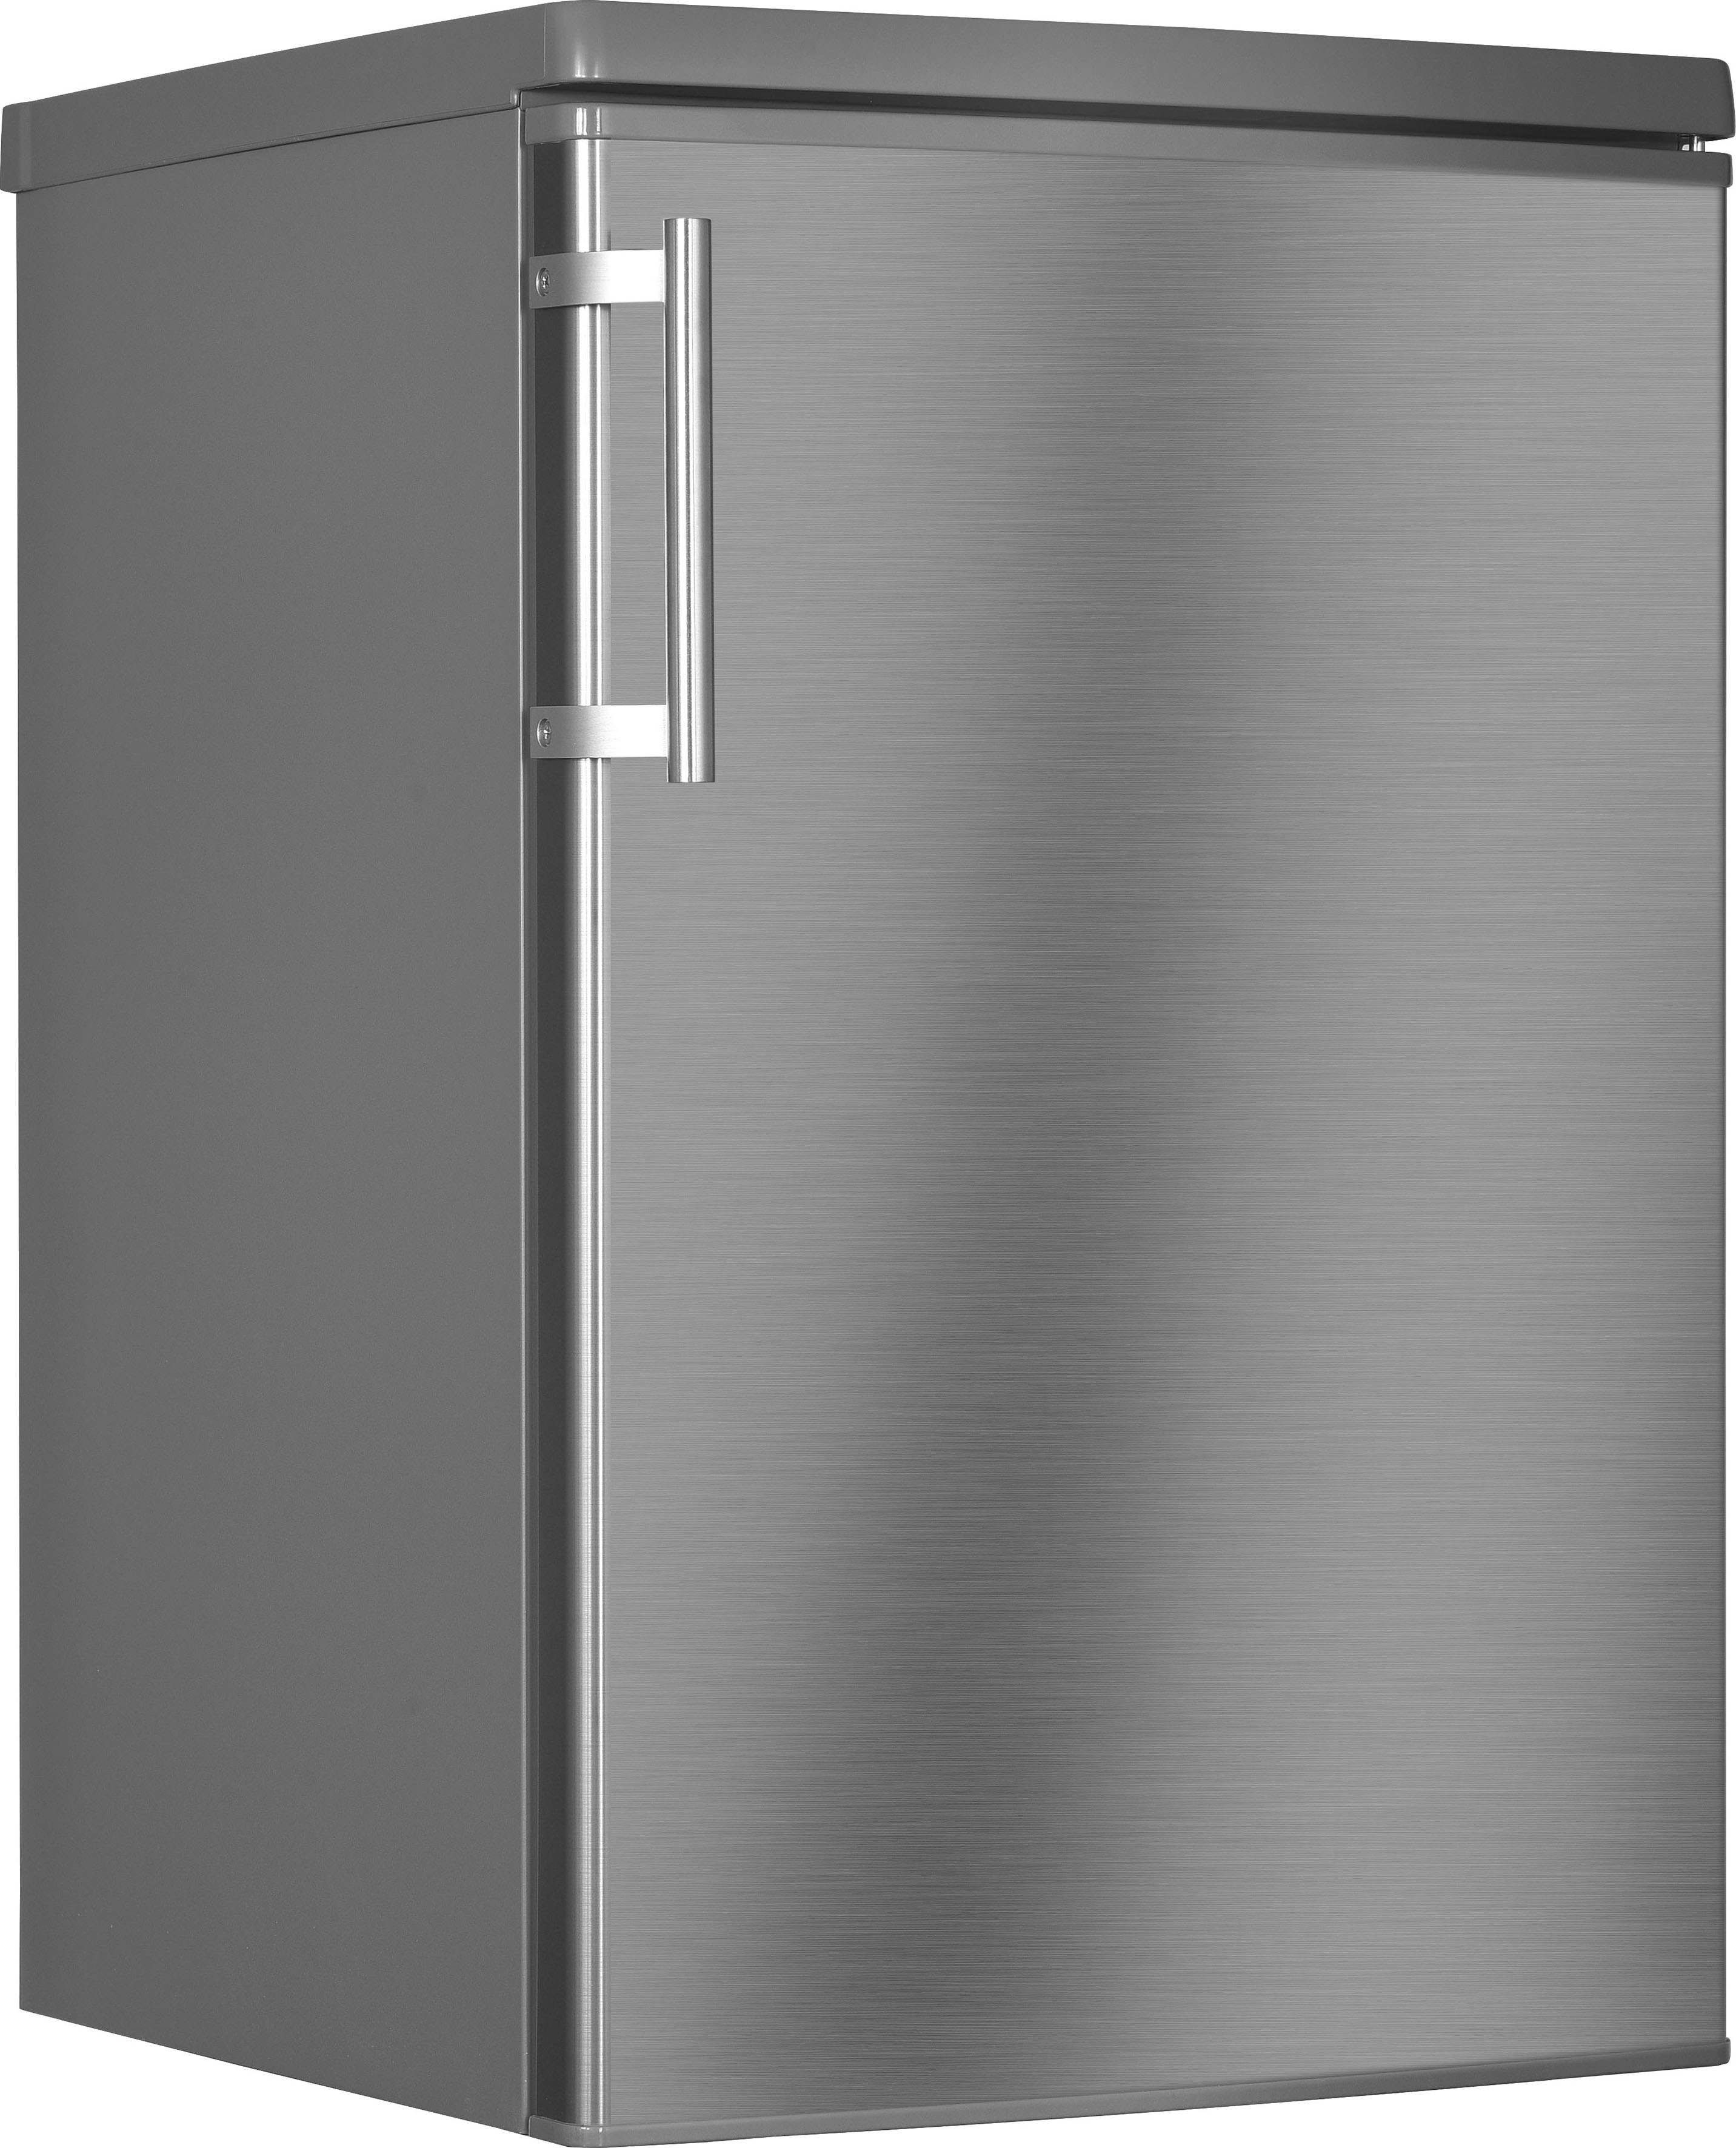 Hanseatic Kühlschrank "HKS8555GD", HKS8555GDI-2, 85 cm hoch, 55 cm breit, Schnellgefrierfunktion